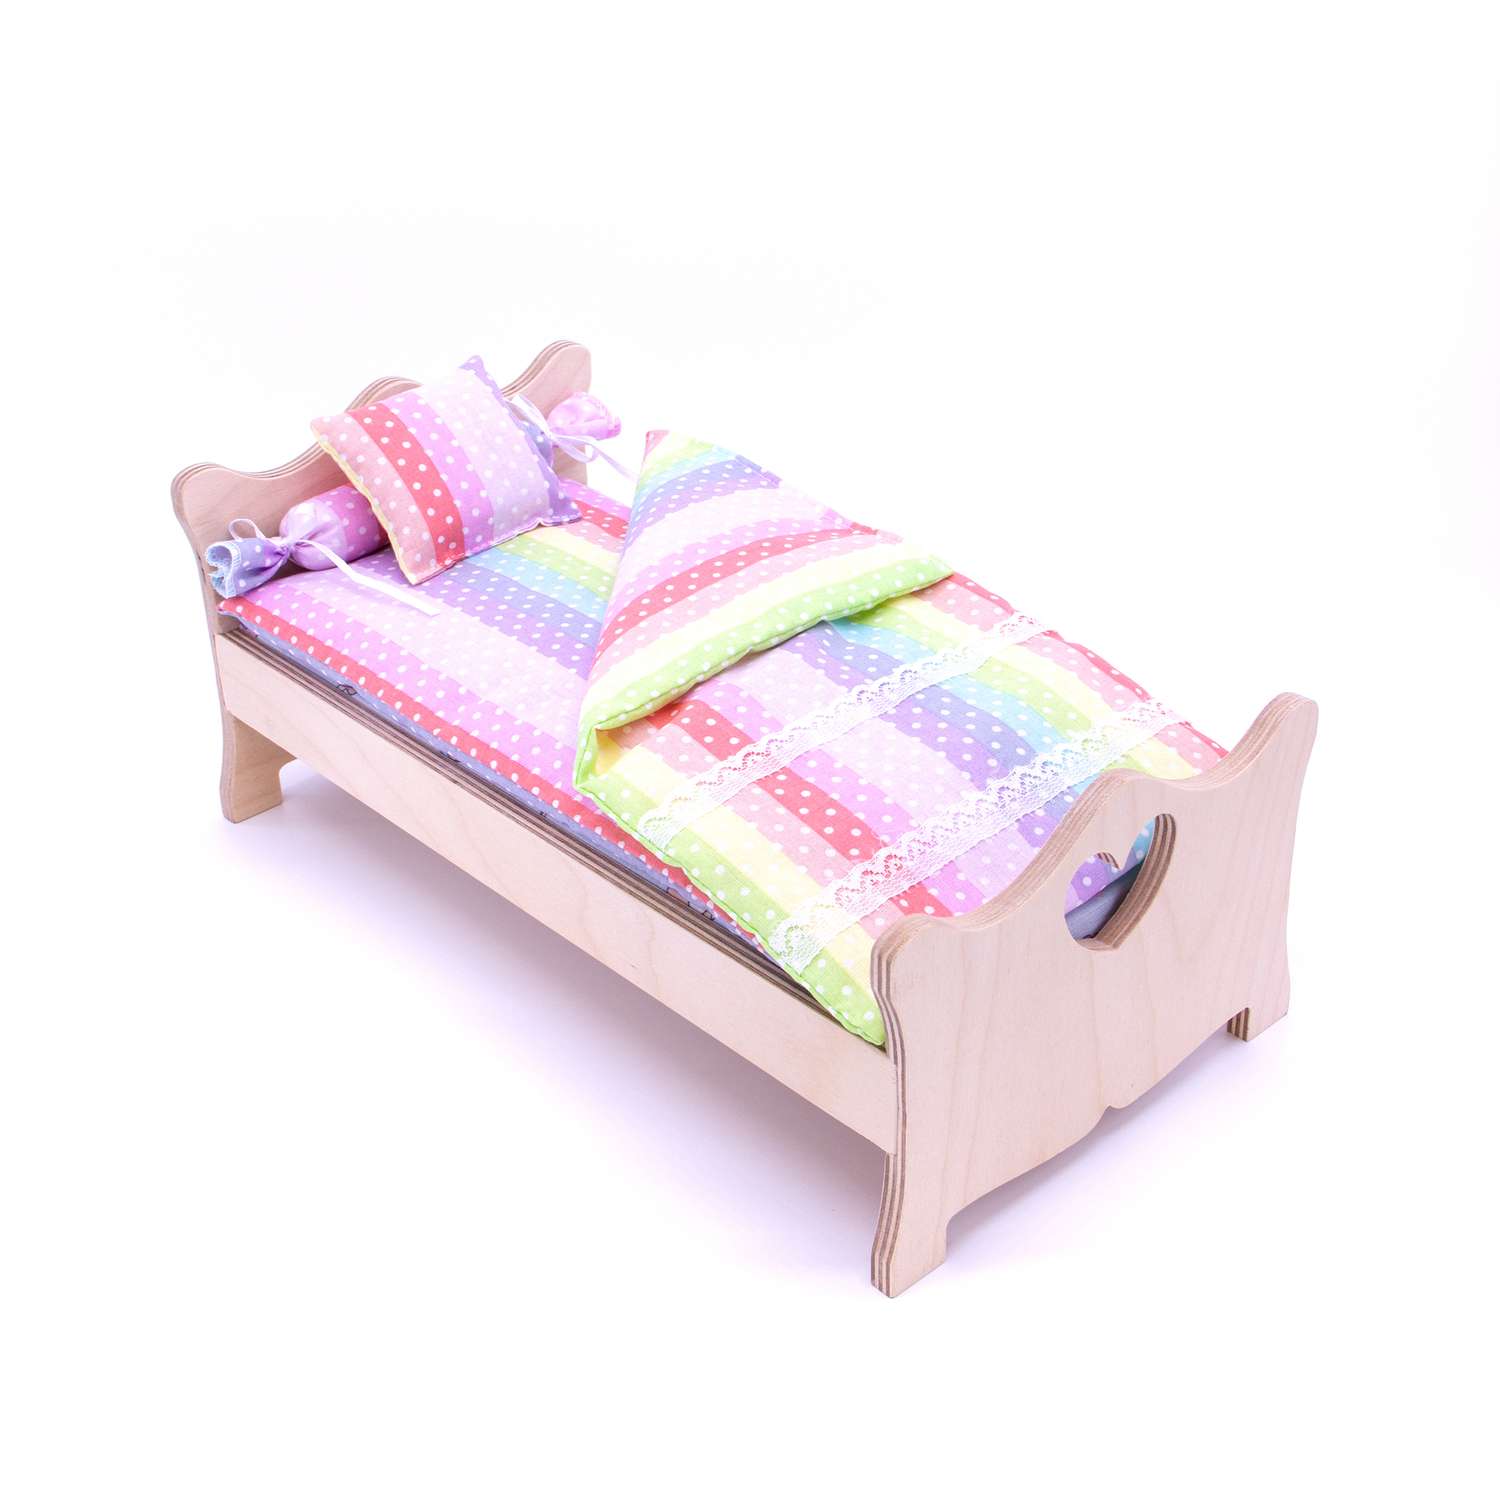 Комлпект постельного белья Модница для куклы 29 см 2002 разноцветный 2002разноцветный - фото 5